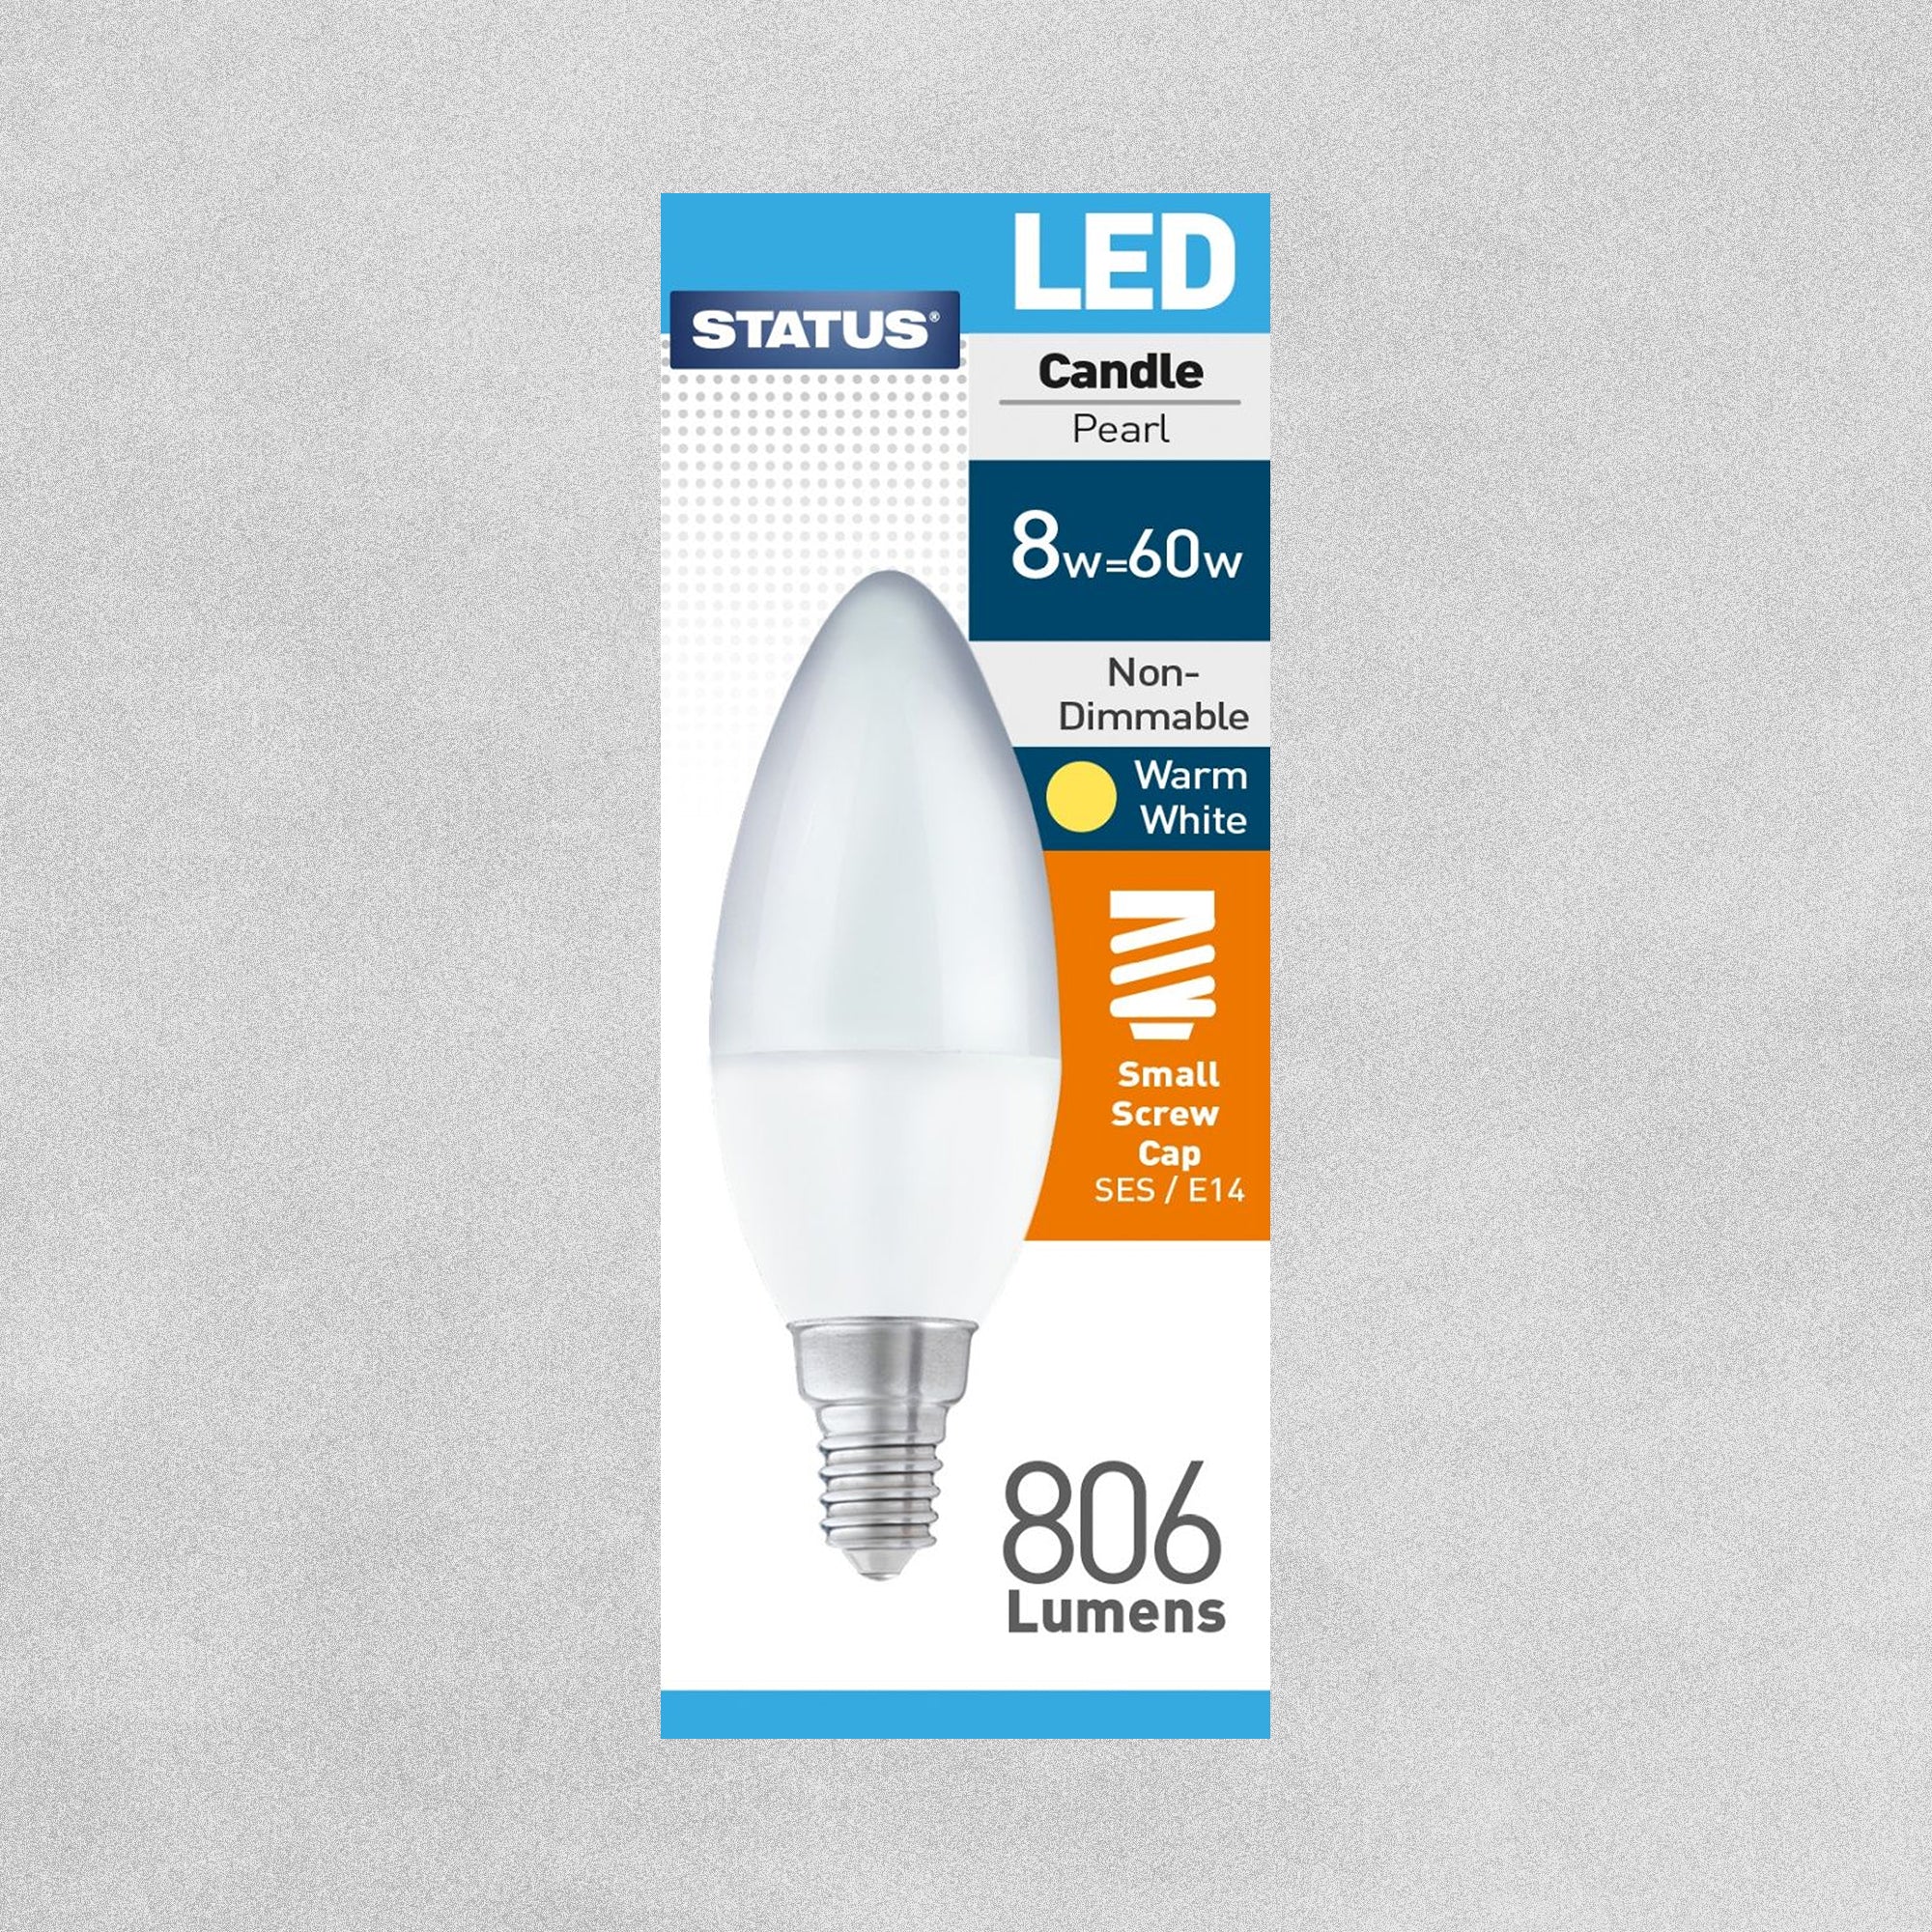 Status LED Candle Pearl Bulb E14/SES 8w=60w - Warm White